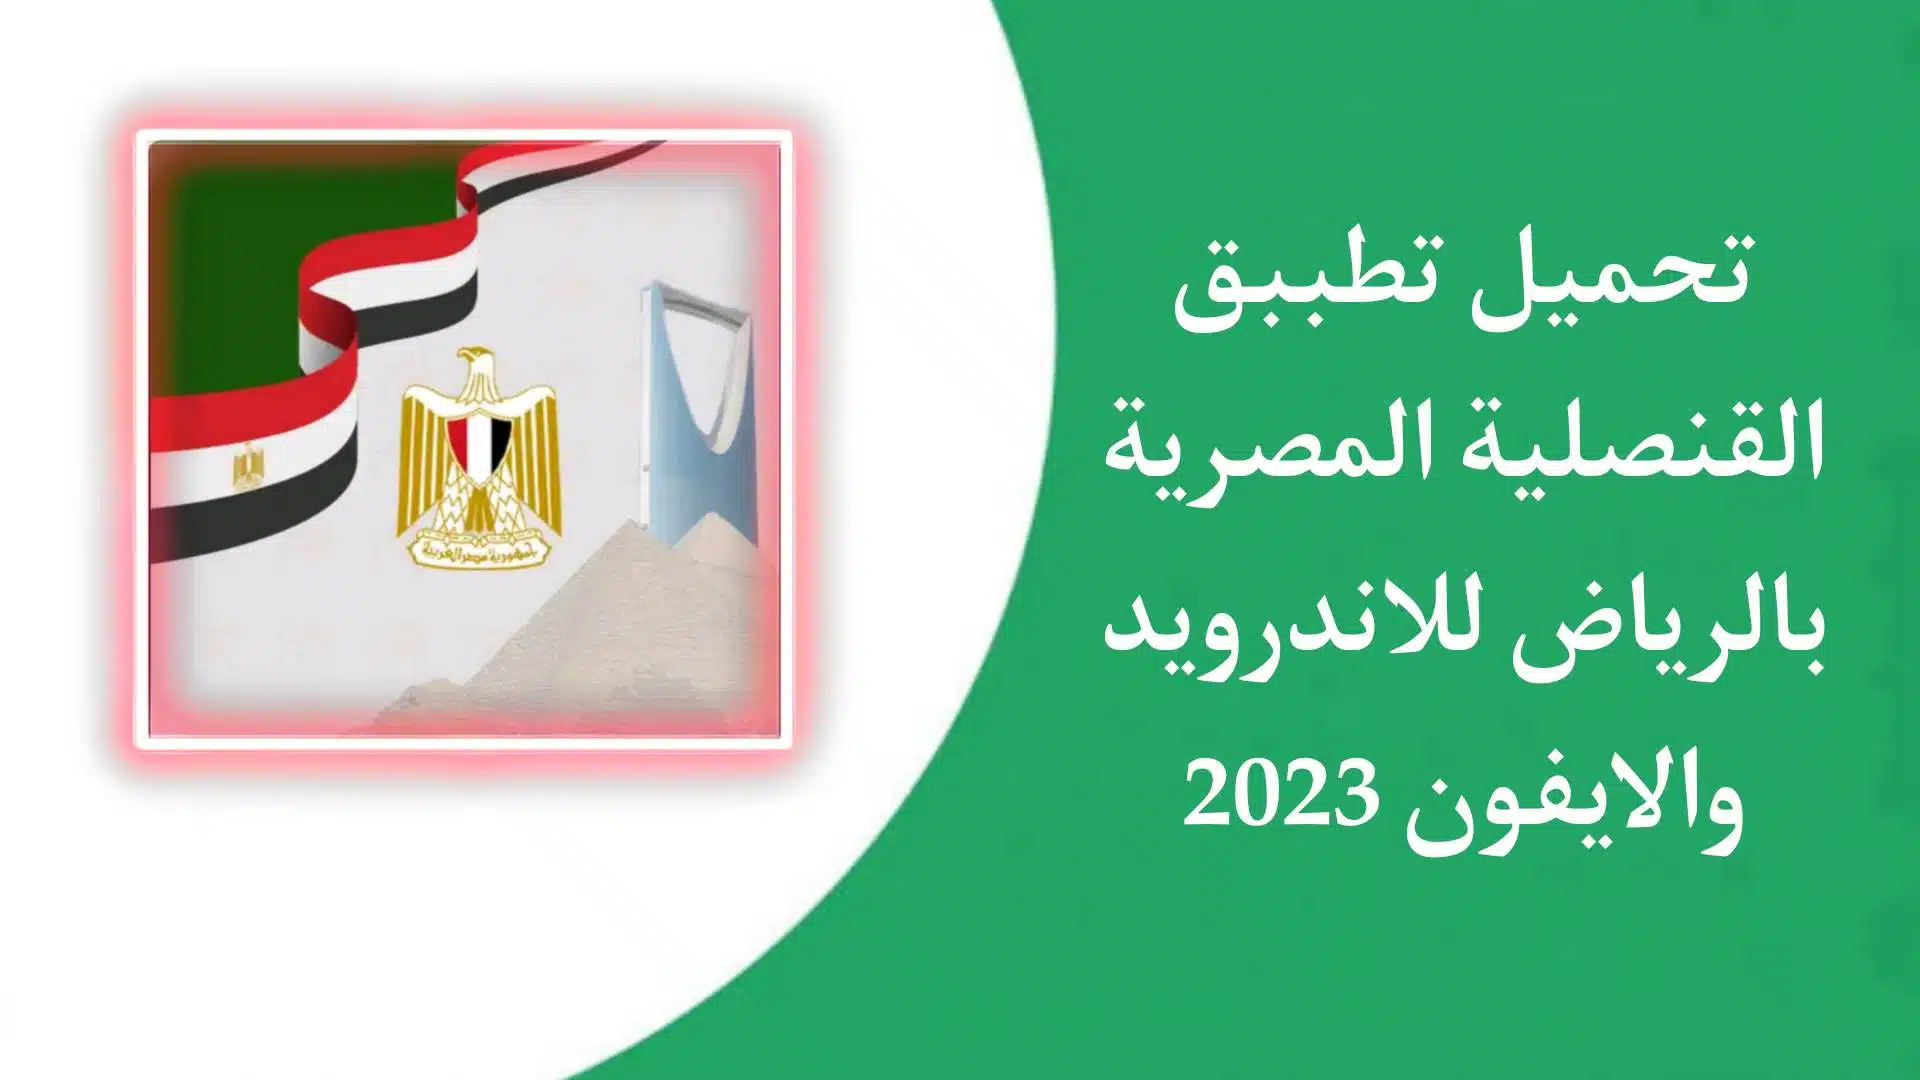 تنزيل تطبيق القنصلية المصرية بالرياض اخر اصدار 2023 للاندرويد والايفون